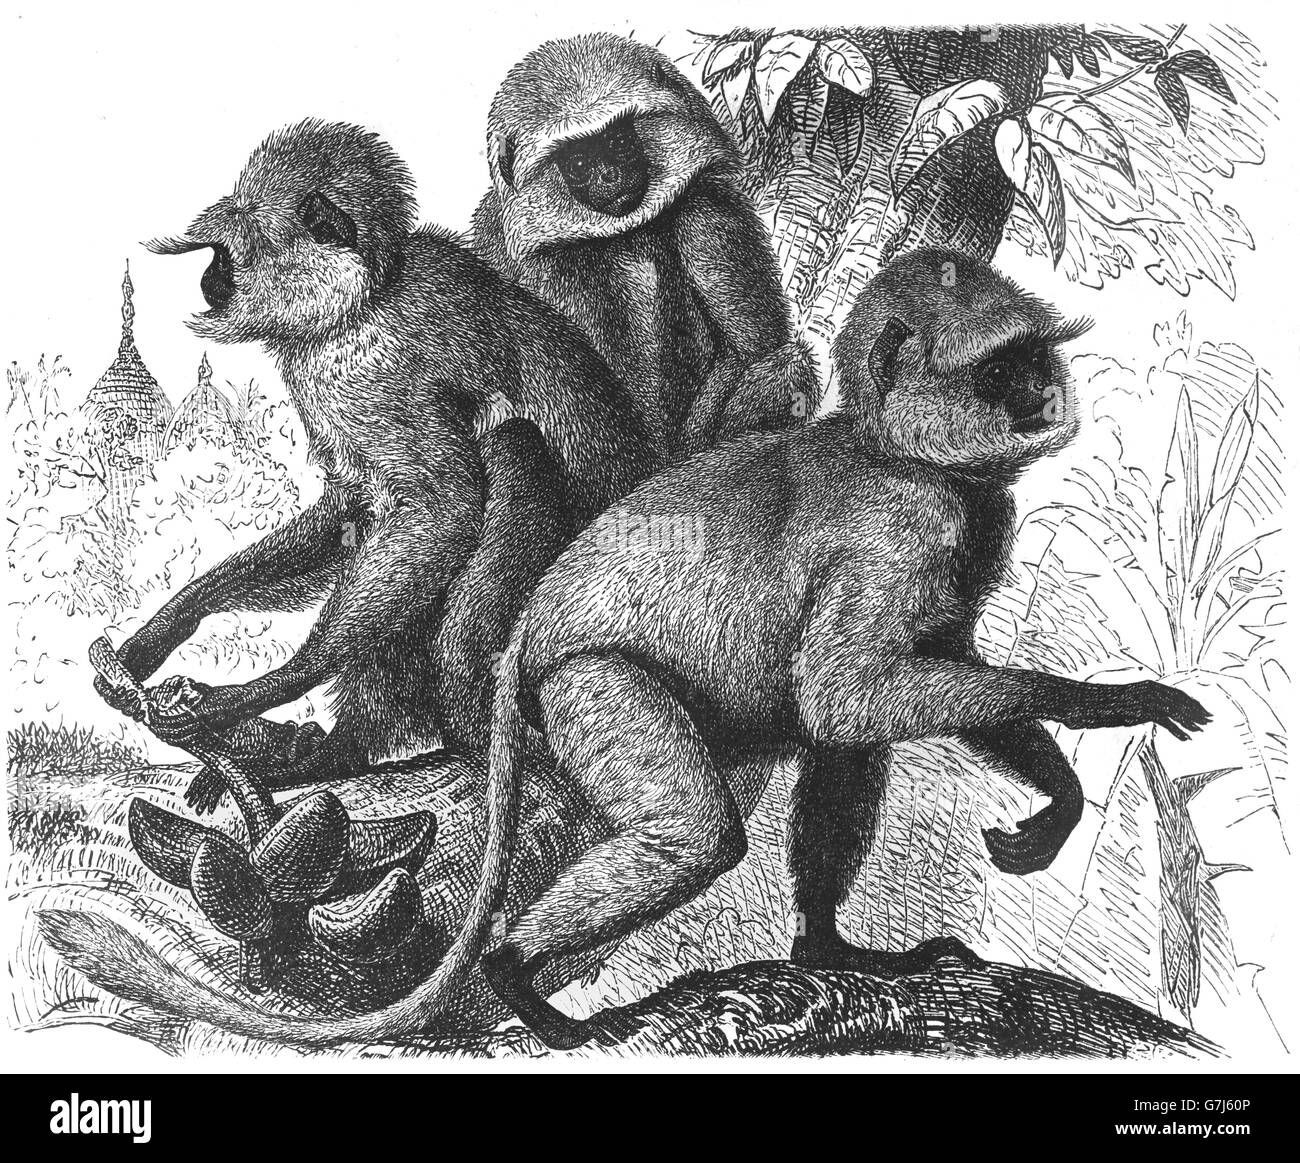 Nördliche Ebenen grau Languren Semnopithecus Entellus, alten Welt Affe, Cercopithecidae, Illustration aus Buch datiert 1904 Stockfoto